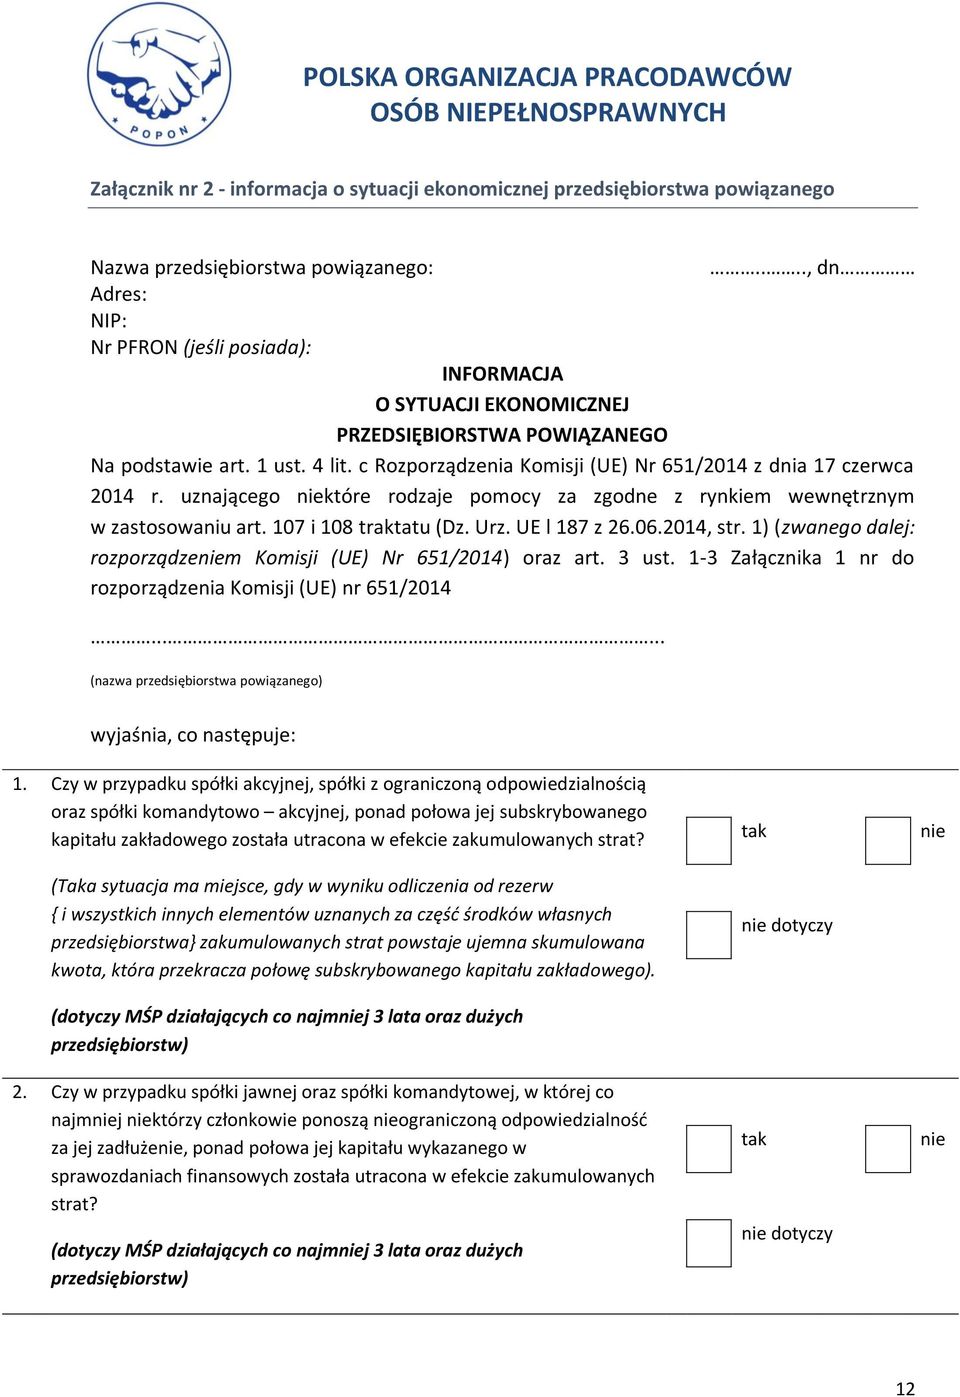 c Rozporządzenia Komisji (UE) Nr 651/2014 z dnia 17 czerwca 2014 r. uznającego niektóre rodzaje pomocy za zgodne z rynkiem wewnętrznym w zastosowaniu art. 107 i 108 traktatu (Dz. Urz. UE l 187 z 26.